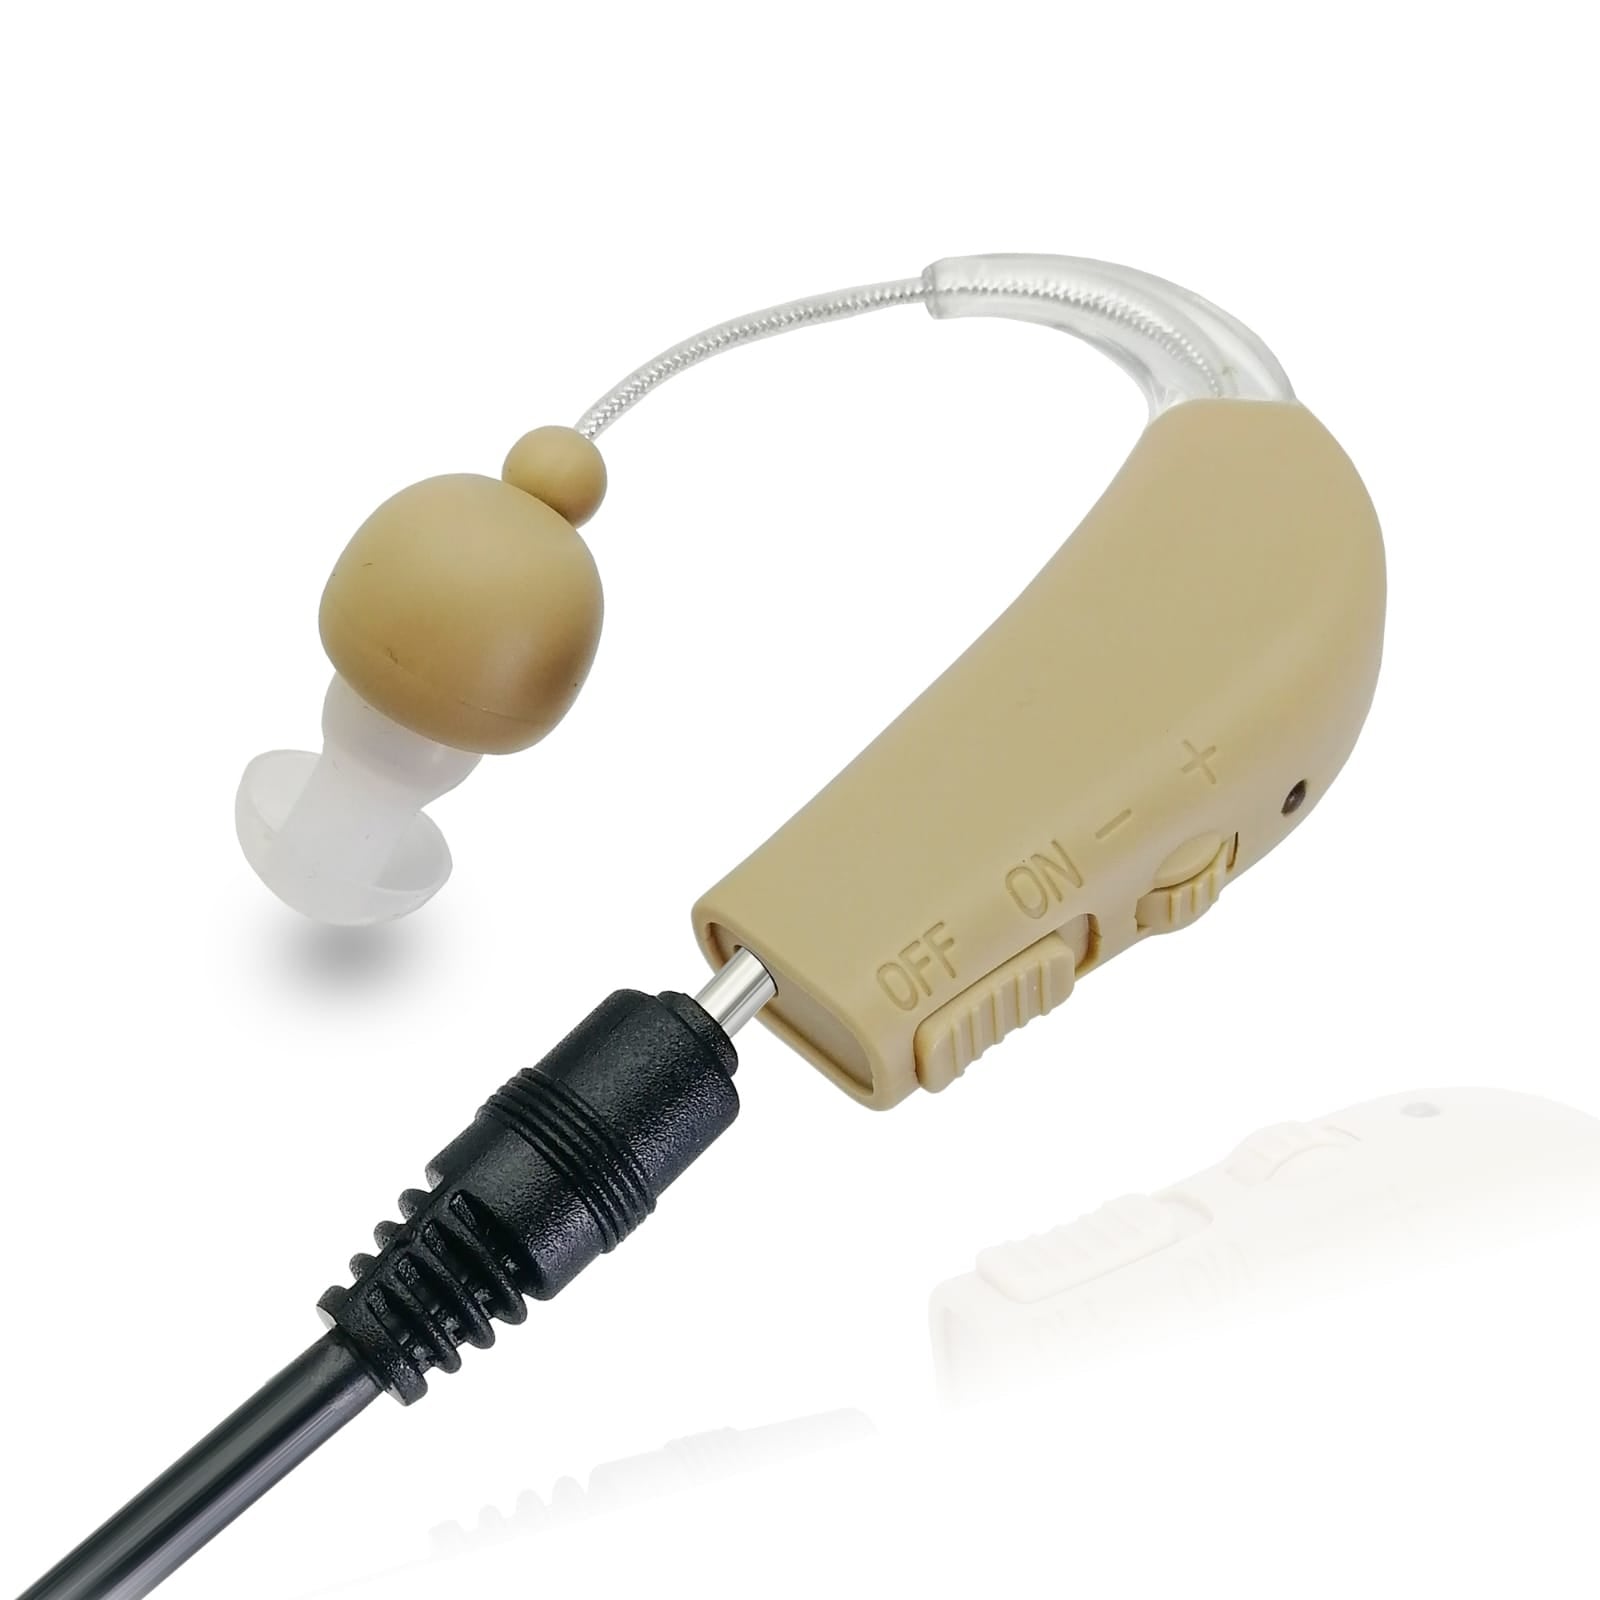 一对迷你耳背式助听器 BTE-27 可充电助听器 美国设计和制造 在全球销量超过 12,000 件